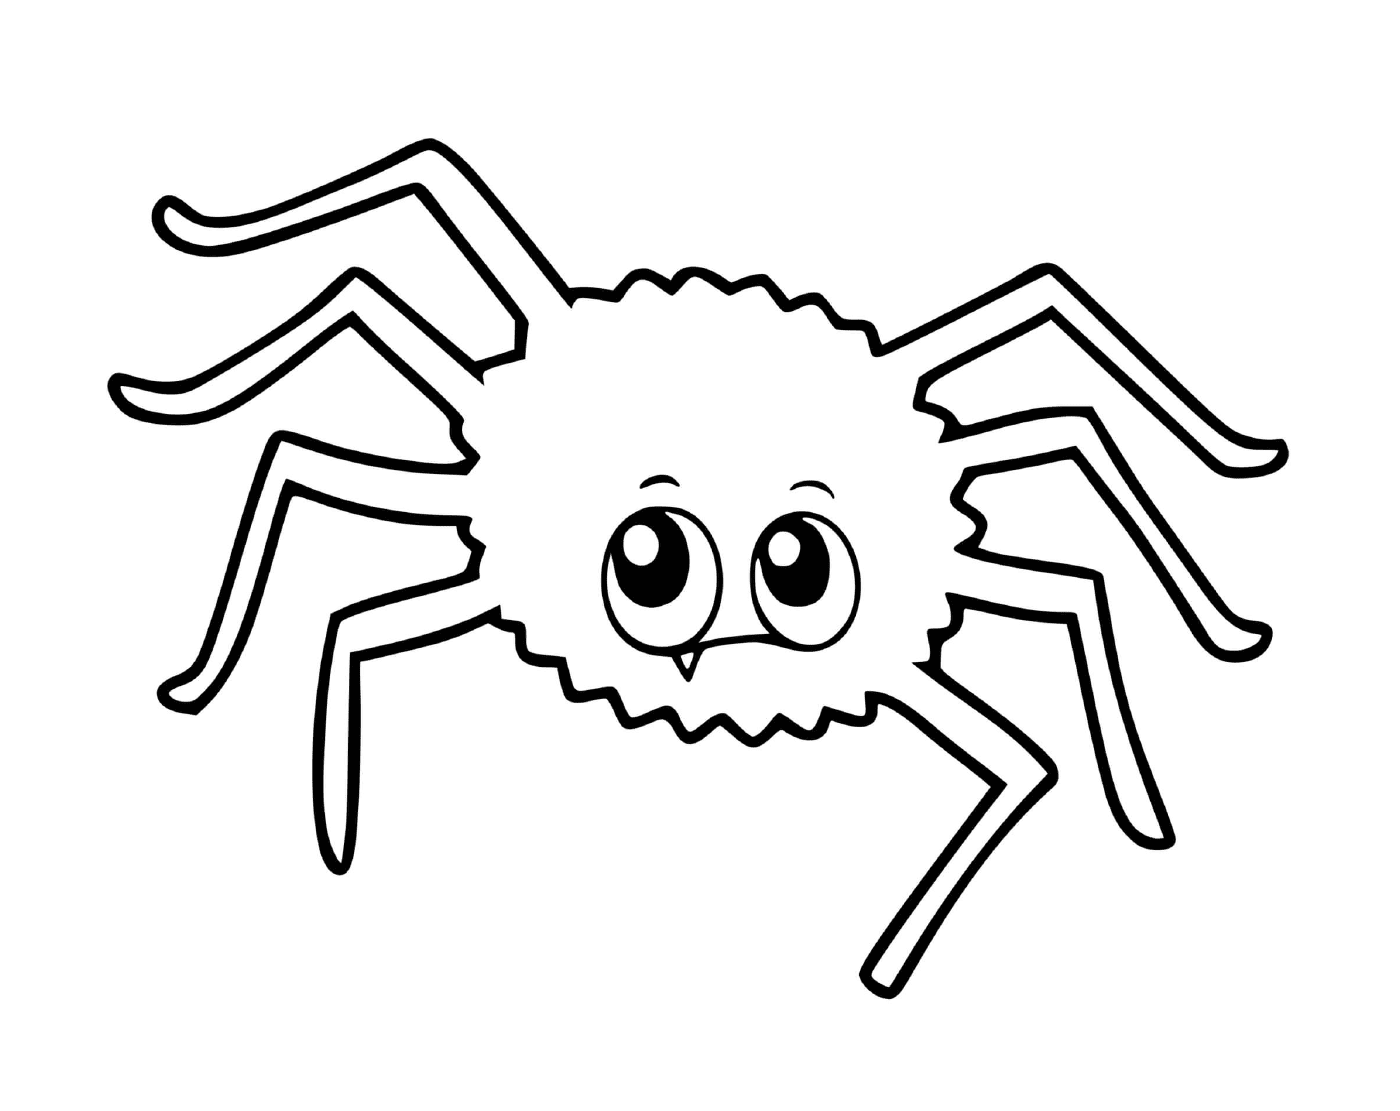  一个蜘蛛 